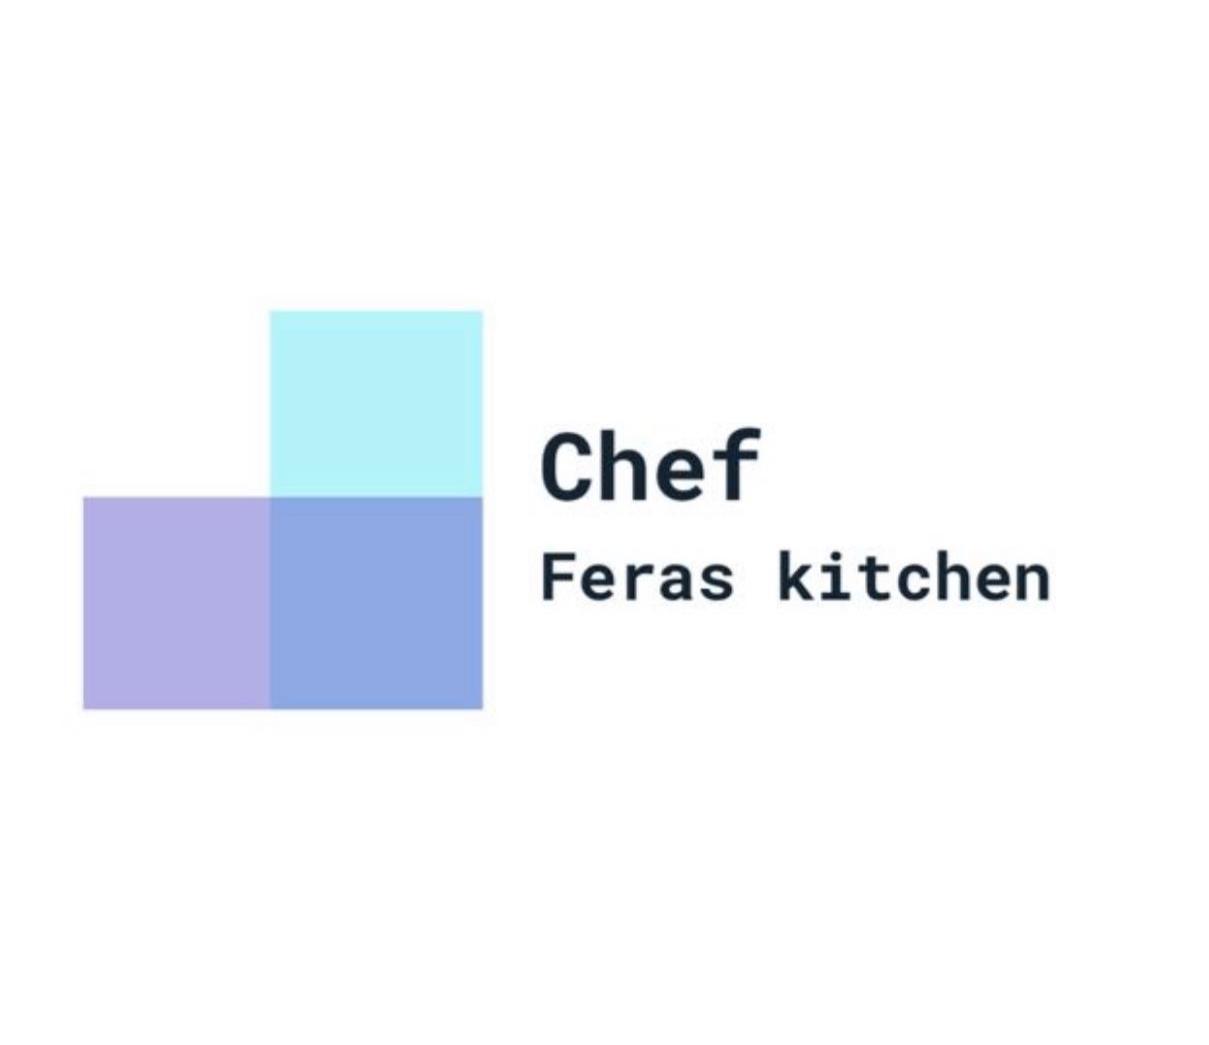 Chef Fereas kitchen